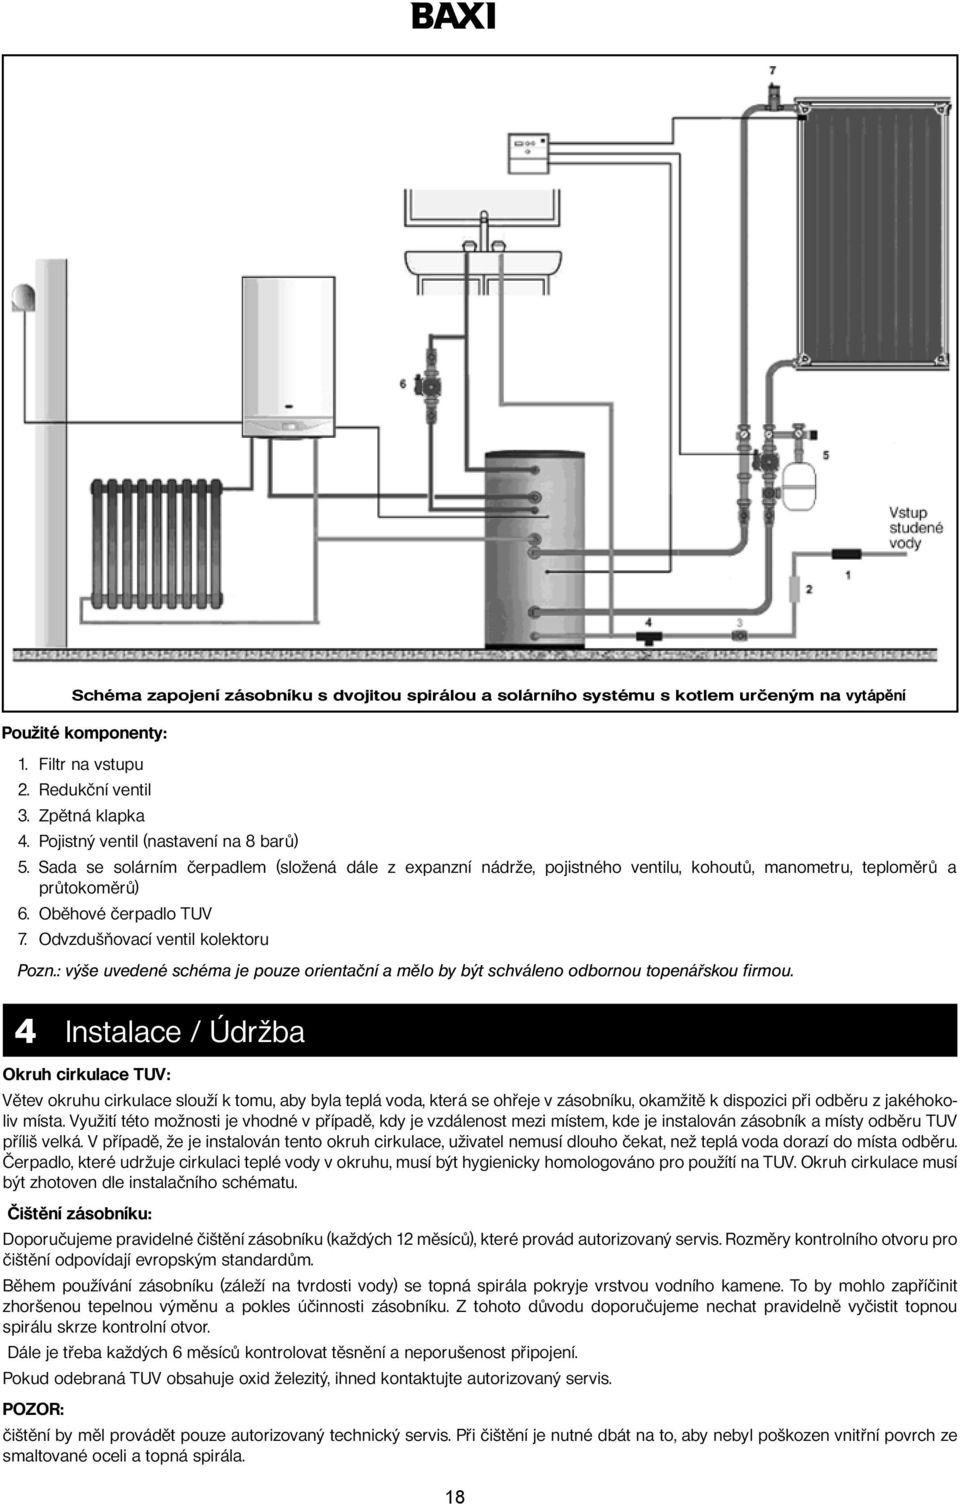 Odvzdušňovací ventil kolektoru Pozn.: výše uvedené schéma je pouze orientační a mělo by být schváleno odbornou topenářskou firmou.